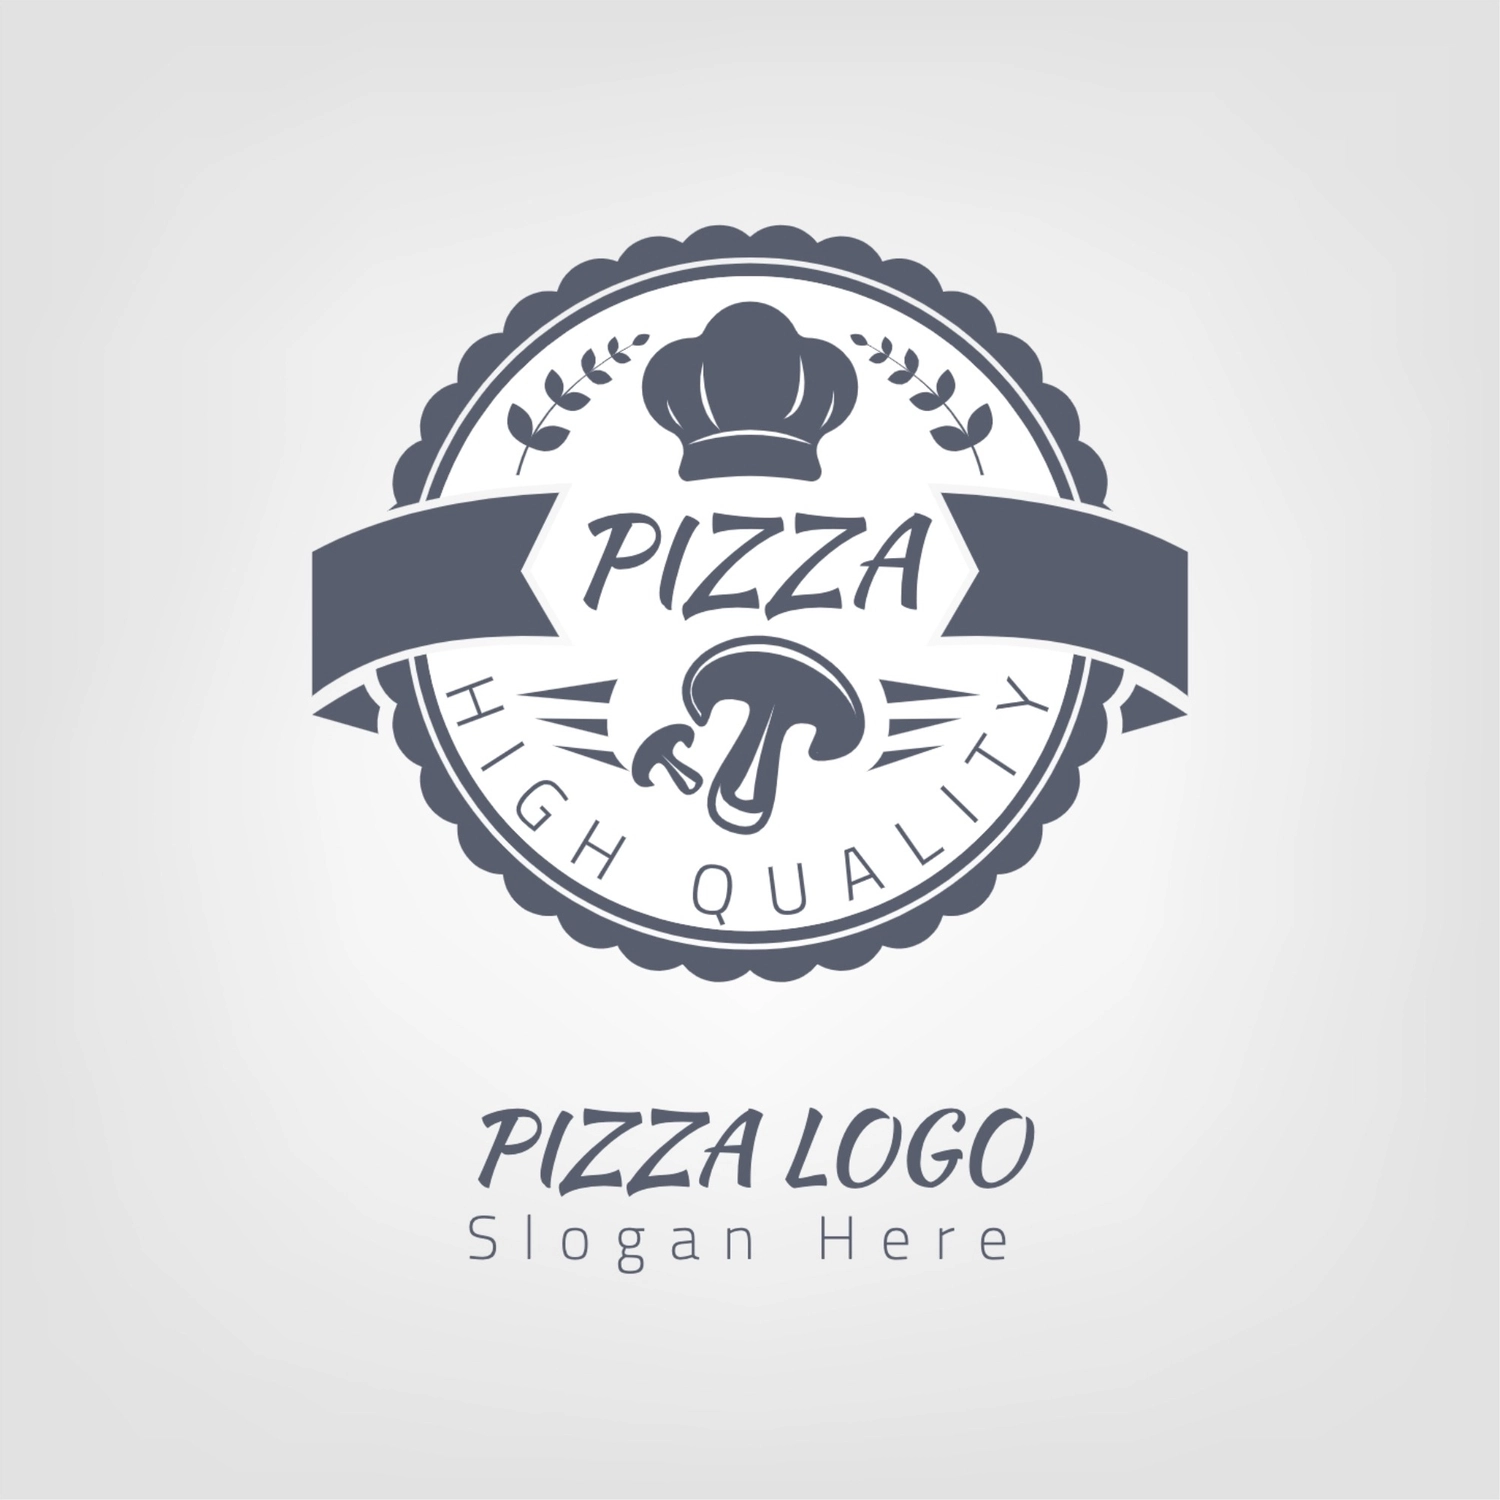 ピザ屋さんのロゴ, おしゃれ, 作成, デザイン, ロゴテンプレート